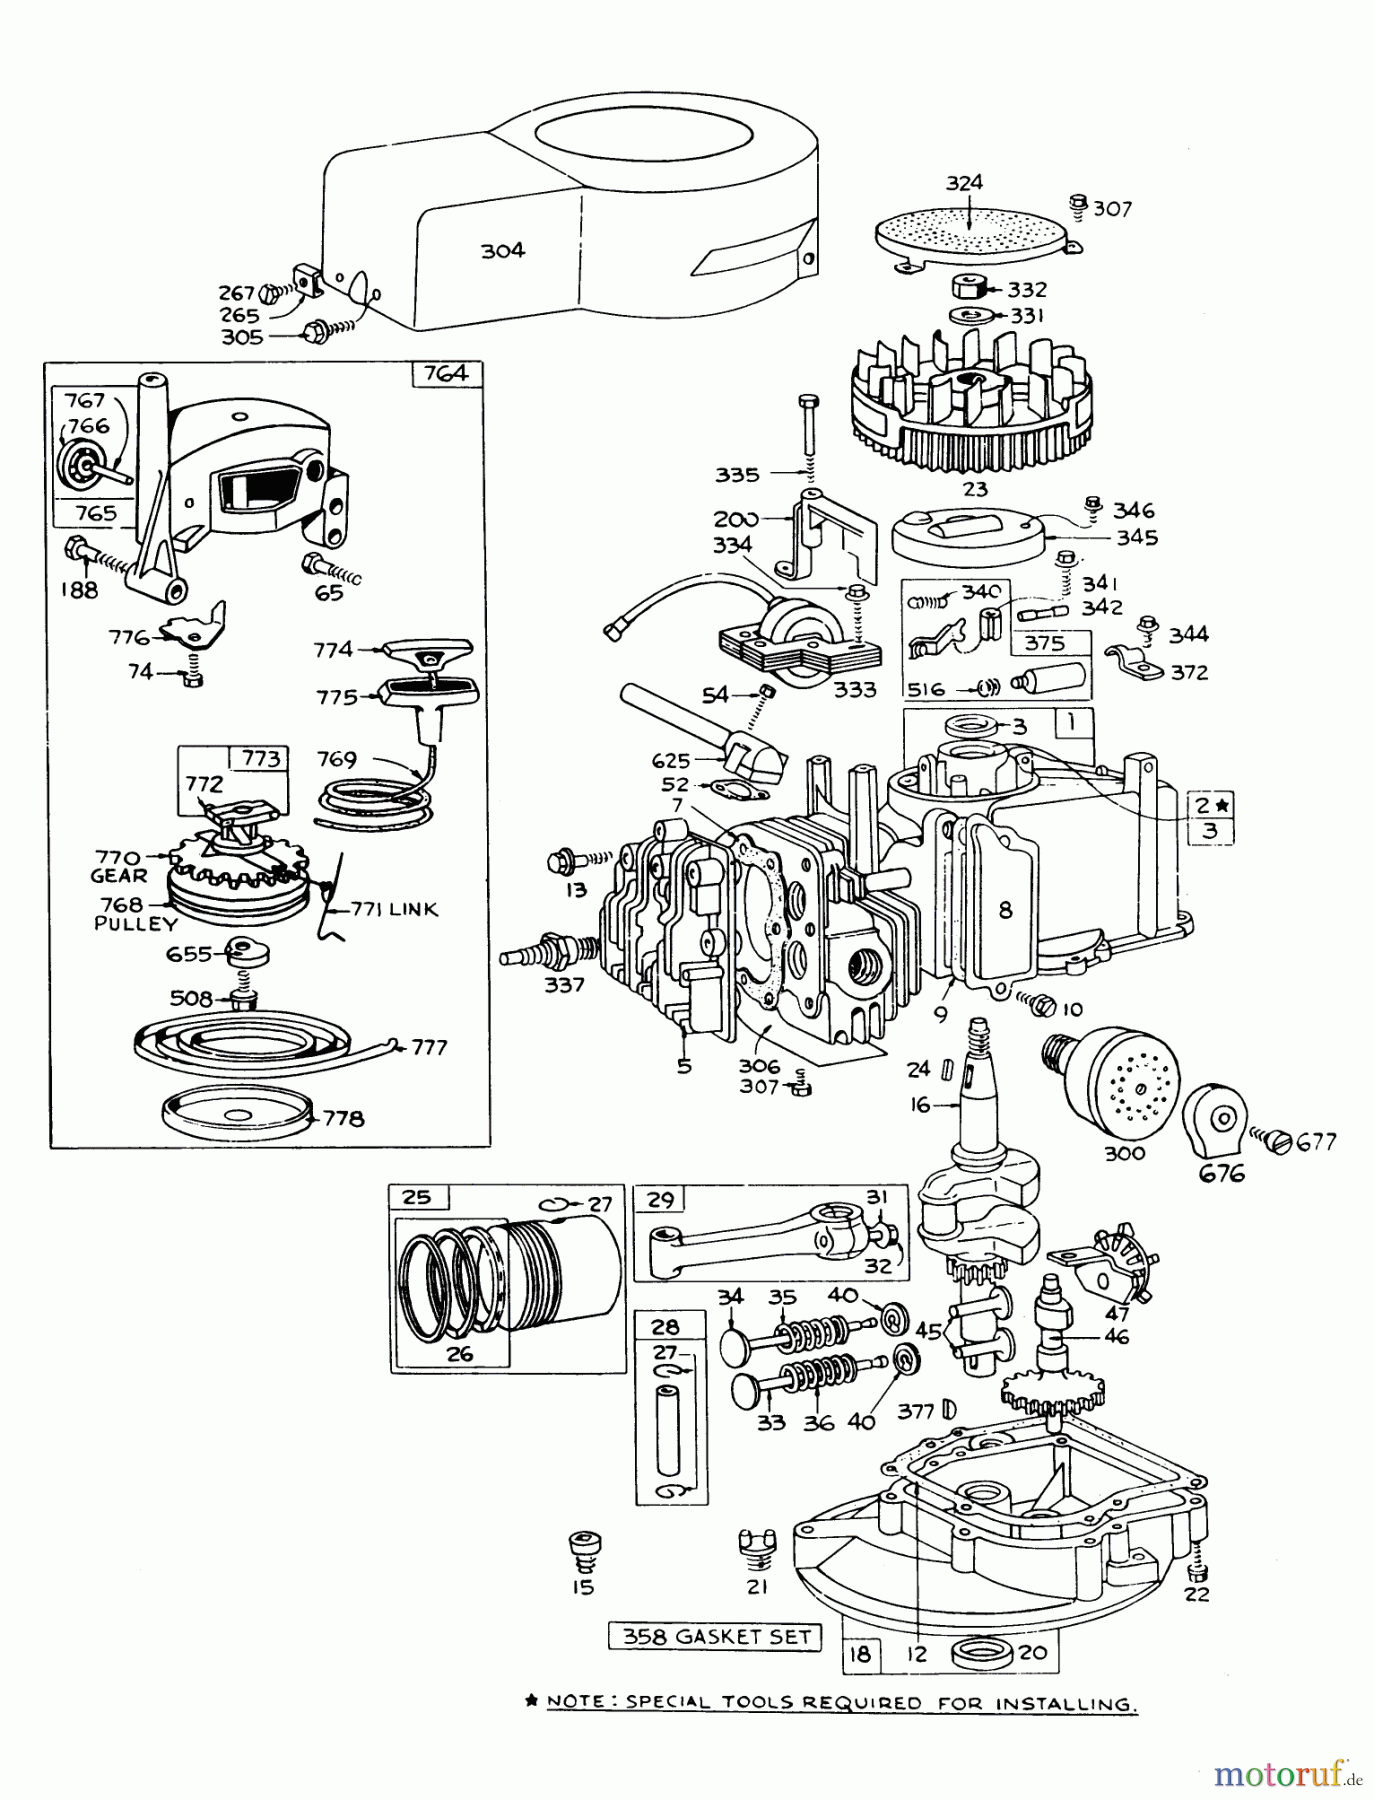  Toro Neu Mowers, Walk-Behind Seite 1 16277 - Toro Whirlwind Lawnmower, 1977 (7000001-7999999) ENGINE BRIGGS & STRATTON MODEL 92508-0954-01 FOR 19